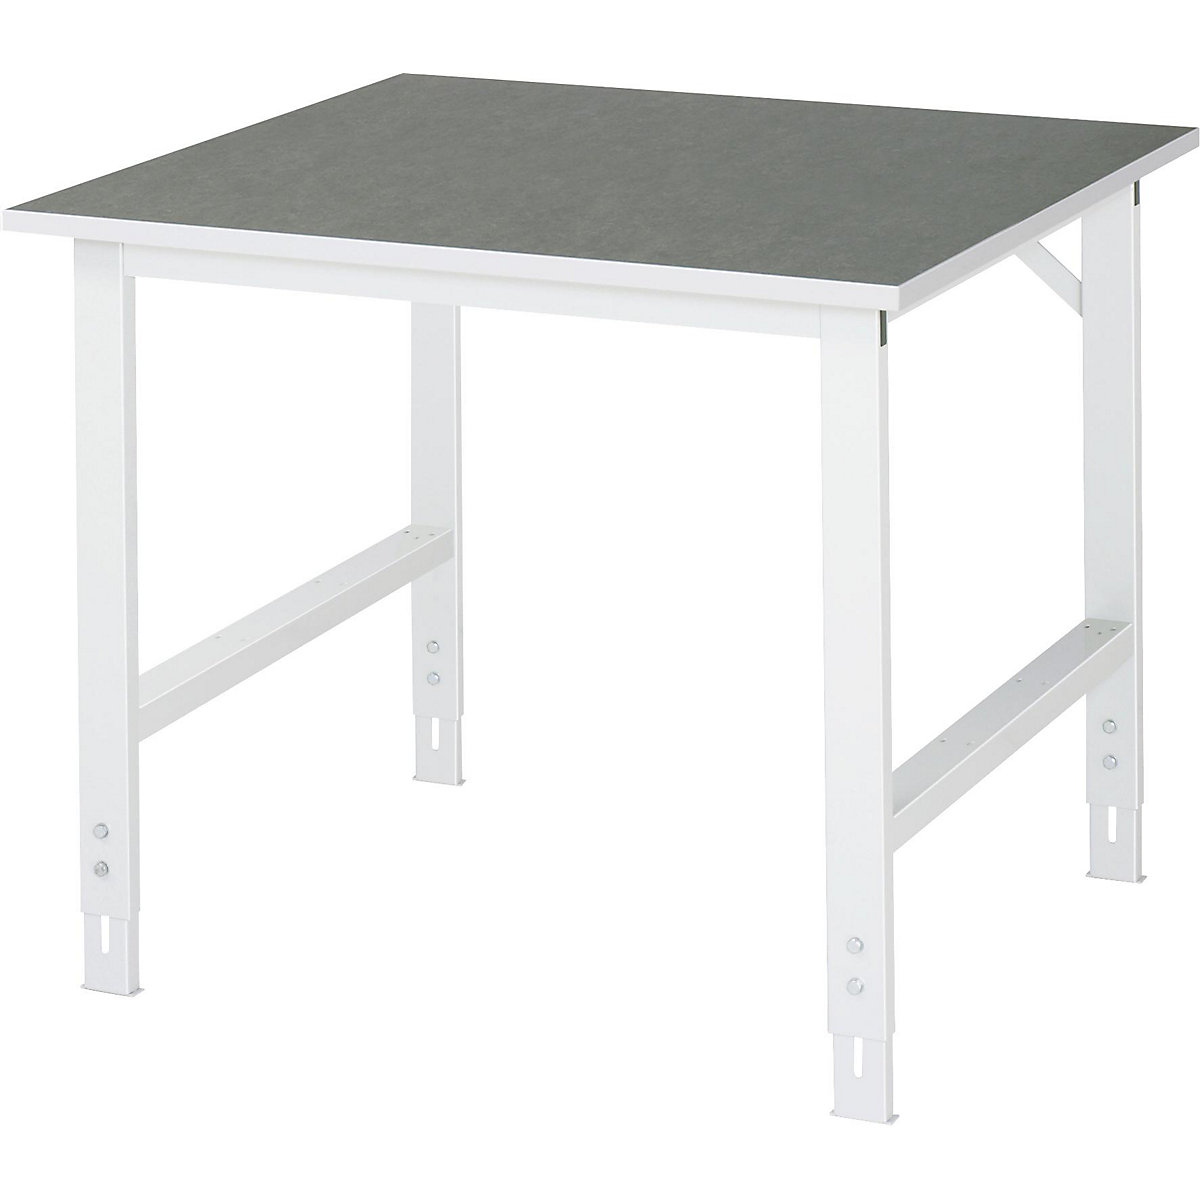 Stół roboczy, z regulacją wysokości – RAU, 760 – 1080 mm, blat z linoleum, szer. x głęb. 1000 x 1000 mm, jasnoszary-11